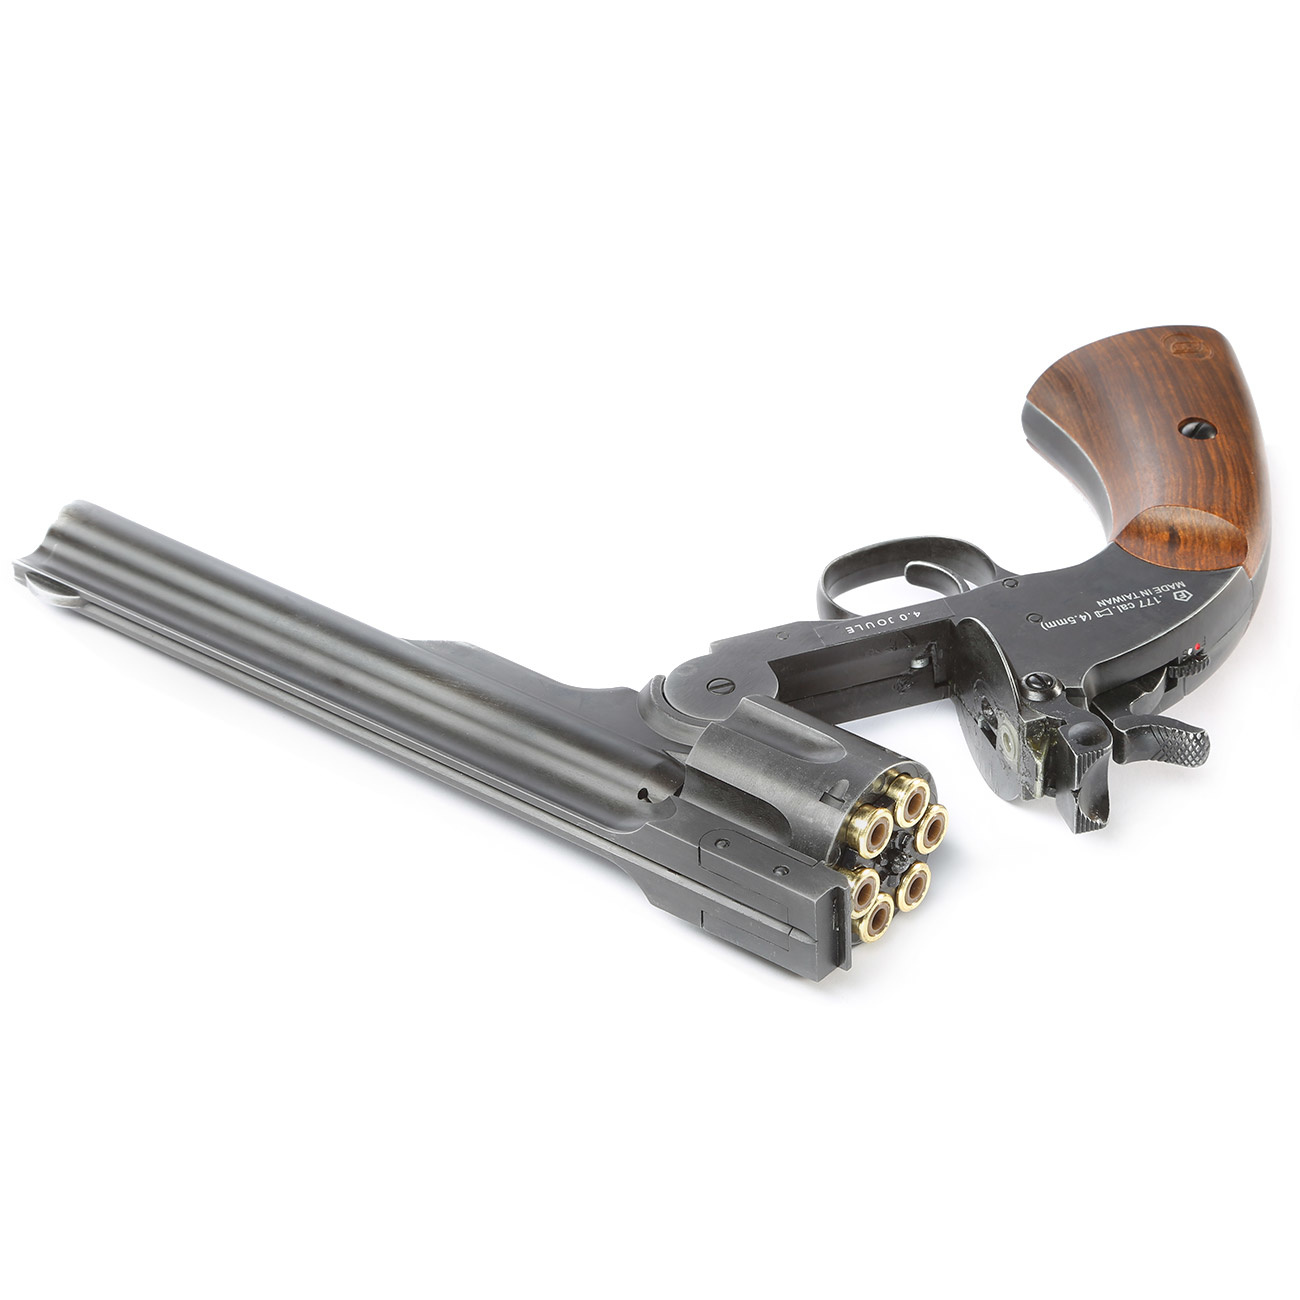 ASG Revolver Schofield Co2 da 6 pollici NBB 2.0 Joule - BK/aspetto legno